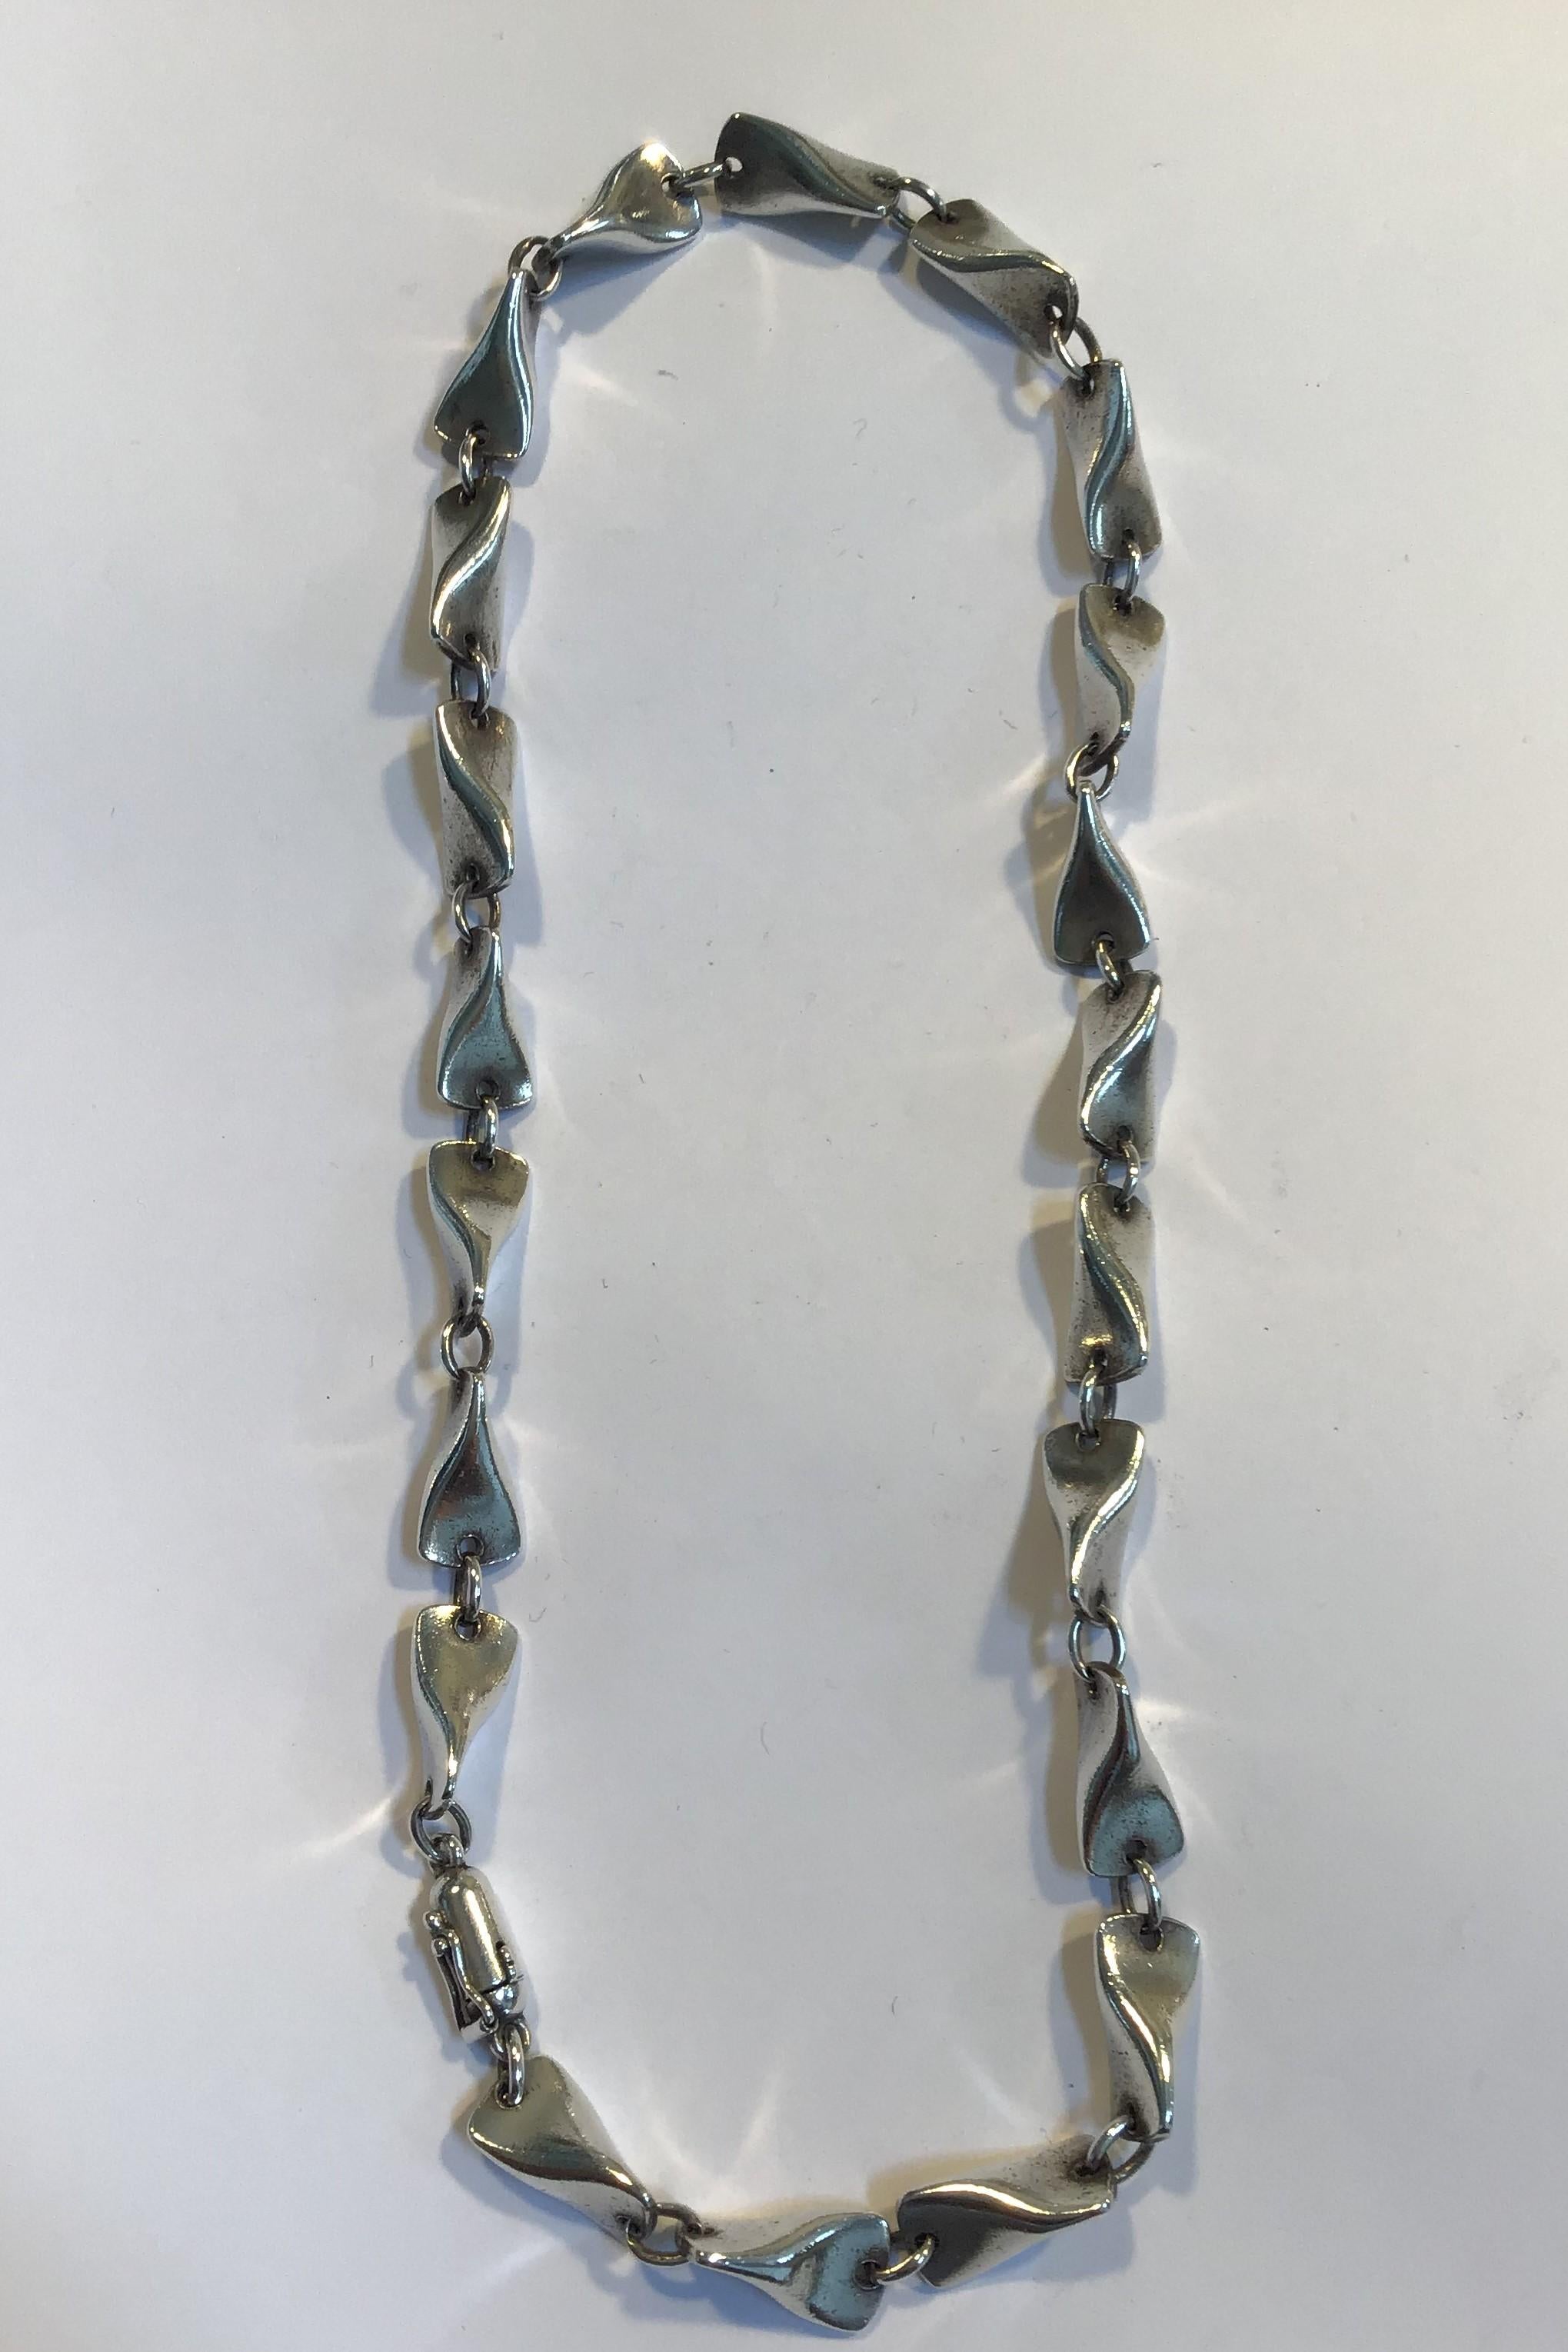 Georg Jensen Sterling Silver Necklace No 104A Edvard Kindt-Larsen L 45 cm(17.71 in) Weight 46.6 gr/1.64 oz